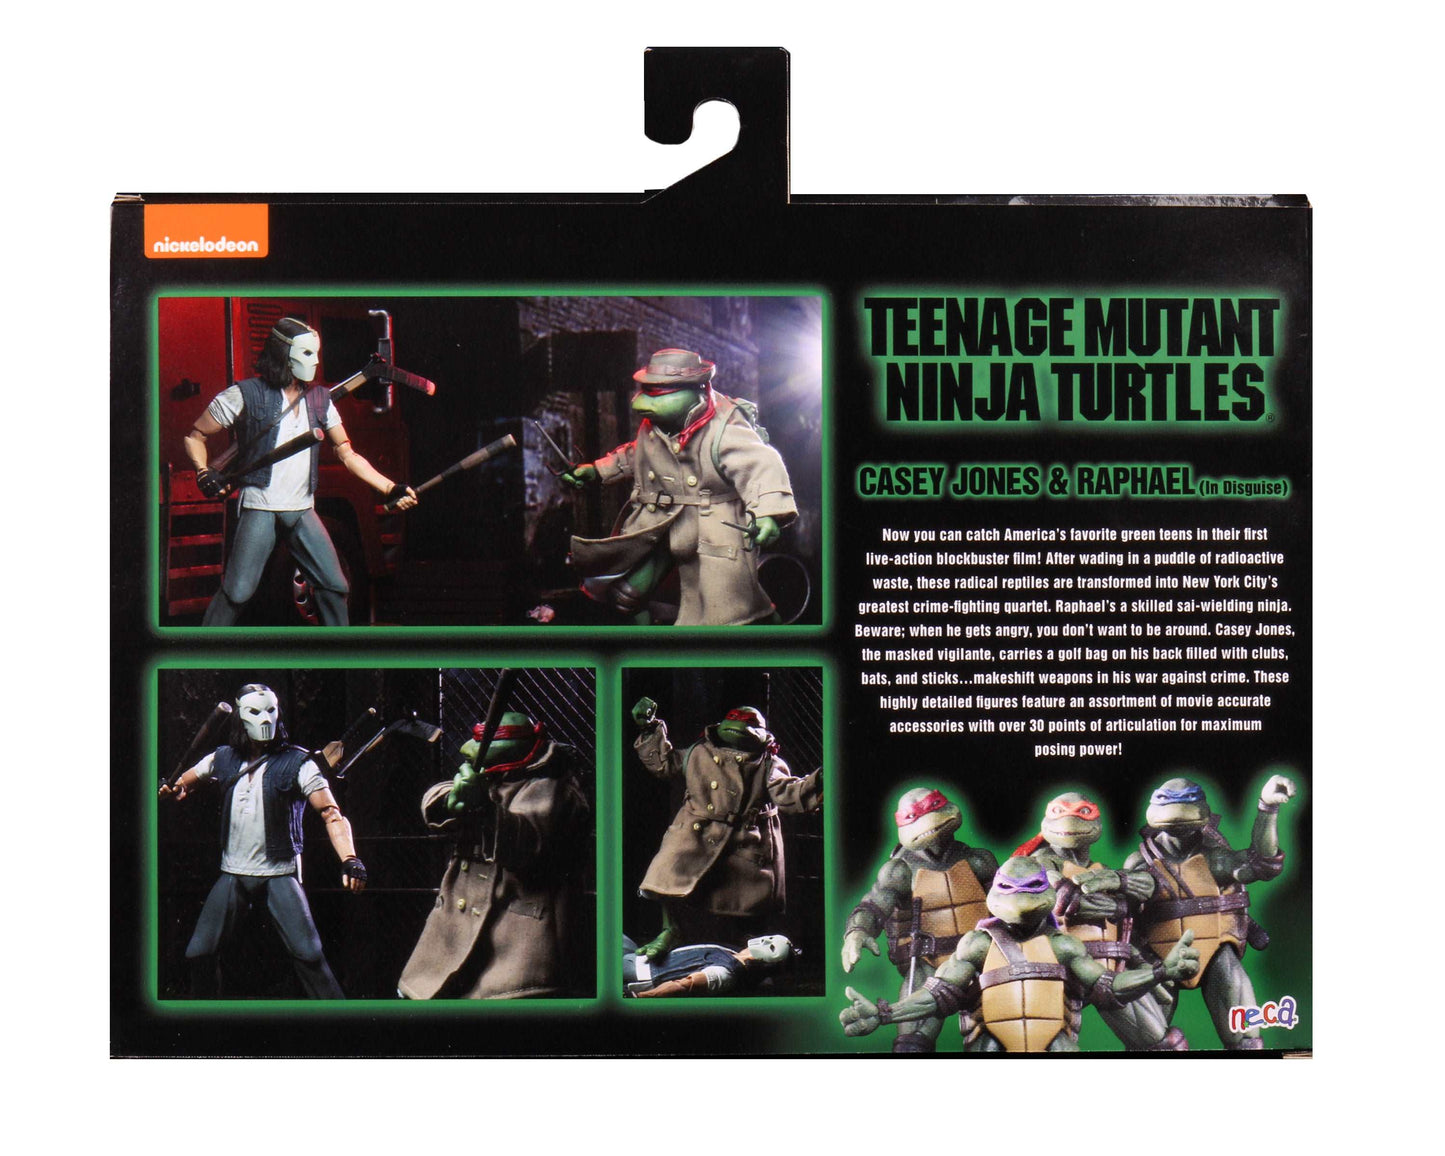 NECA Nickelodeon Teenage Mutant Ninja Turtles 90'S Movie Casey Jones & Raphael in Disguise - 2-pack back of packaging